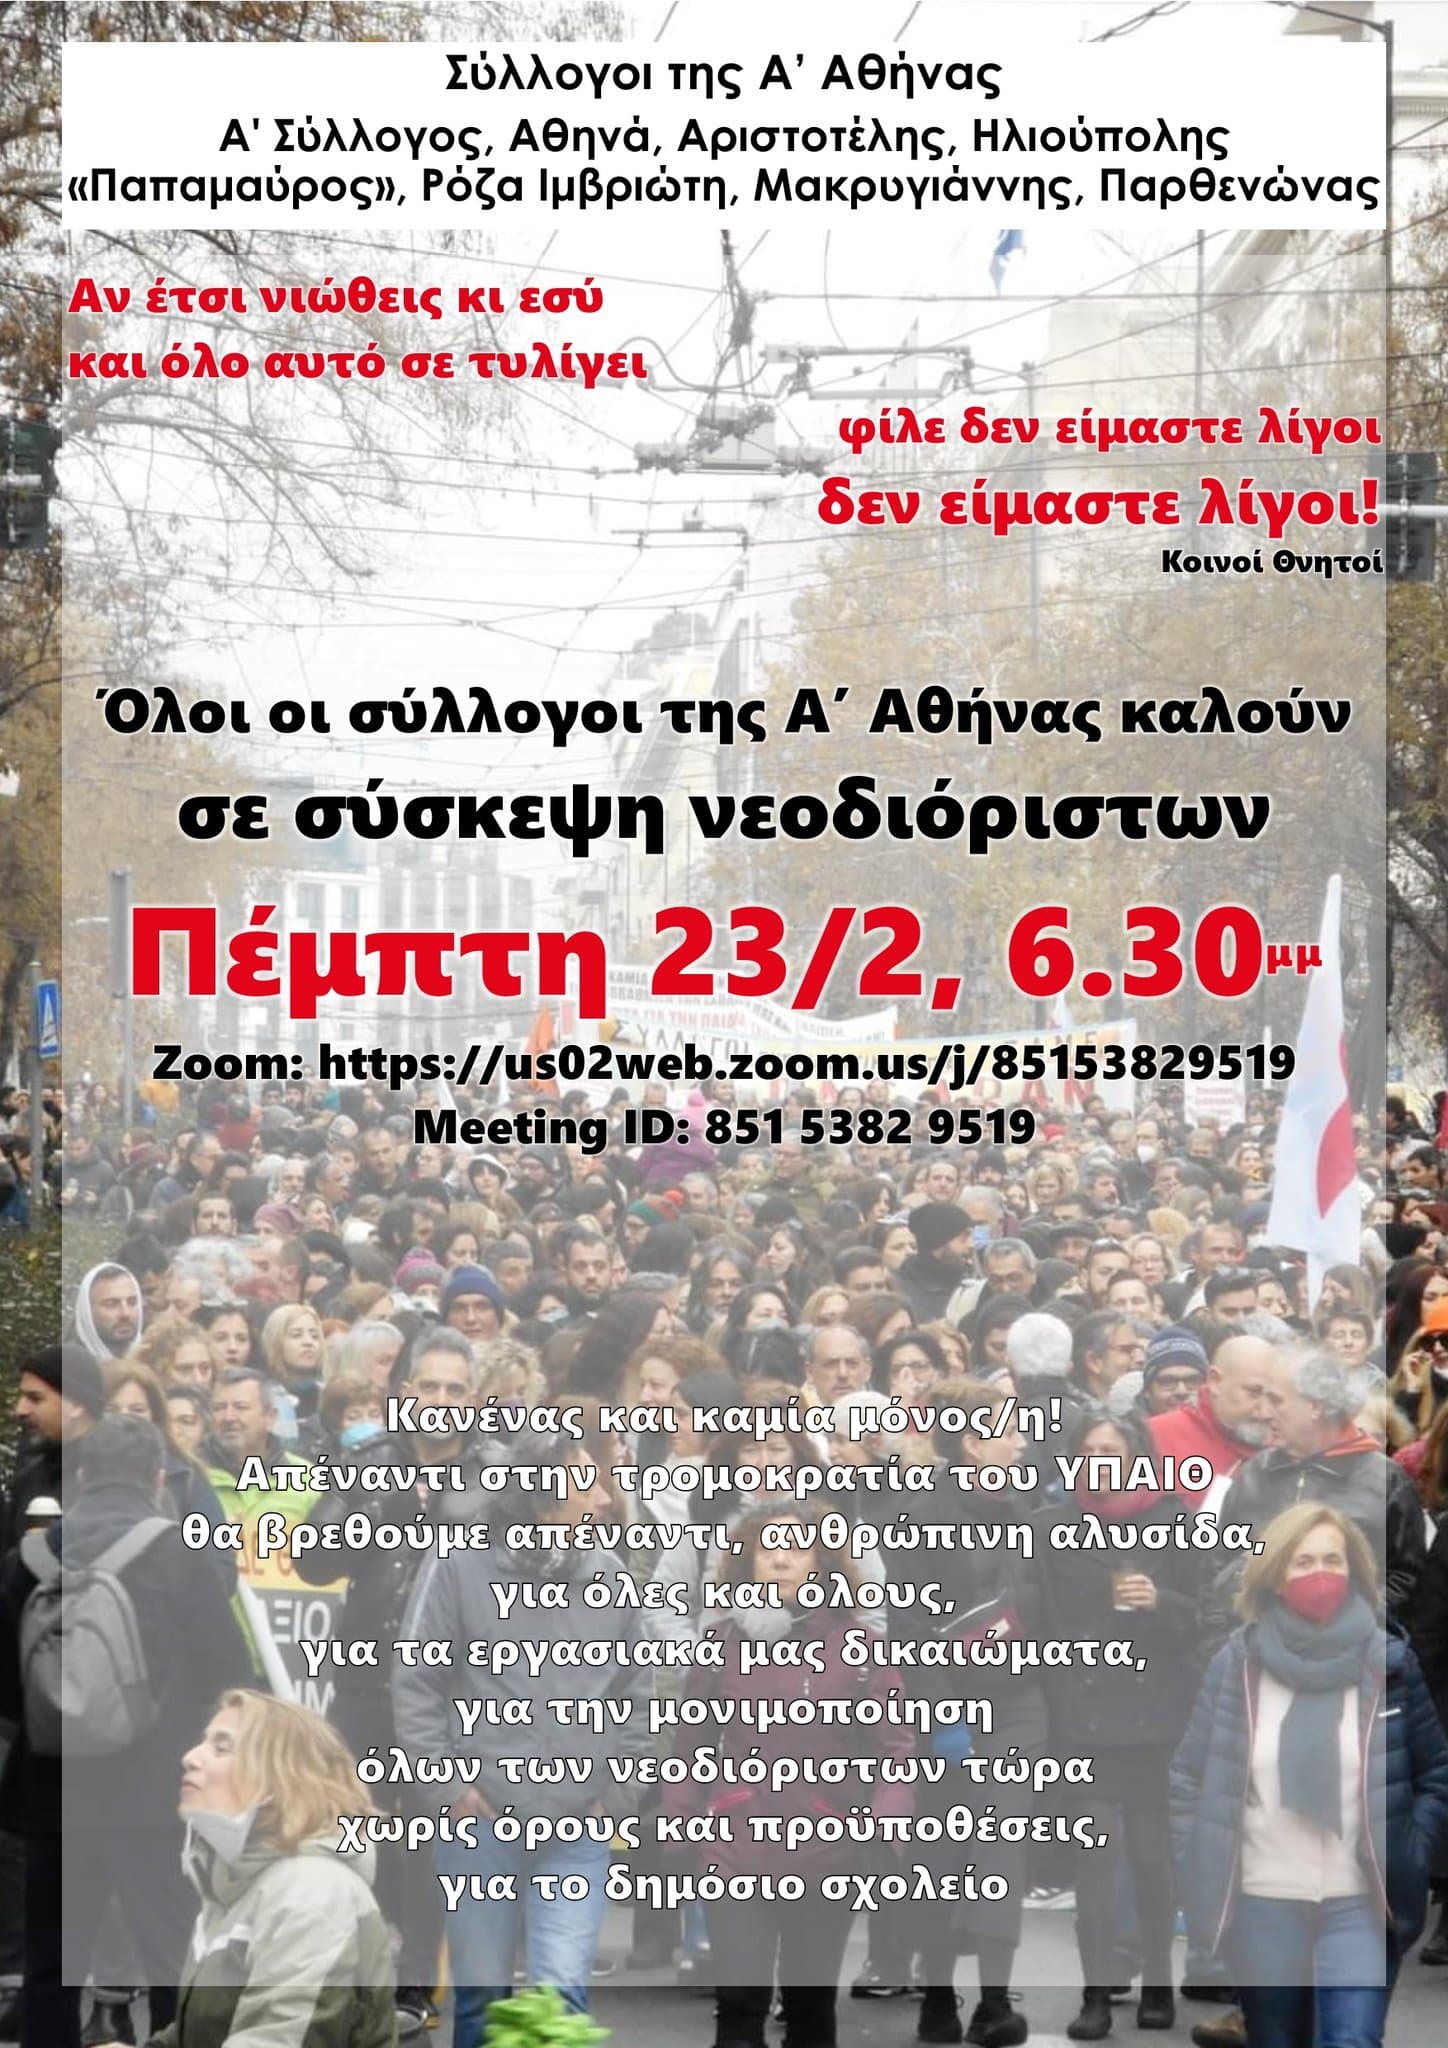 Κοινή σύσκεψη νεοδιόριστων όλων των συλλόγων της Α Αθήνας – Πέμπτη 23/2, 18.30